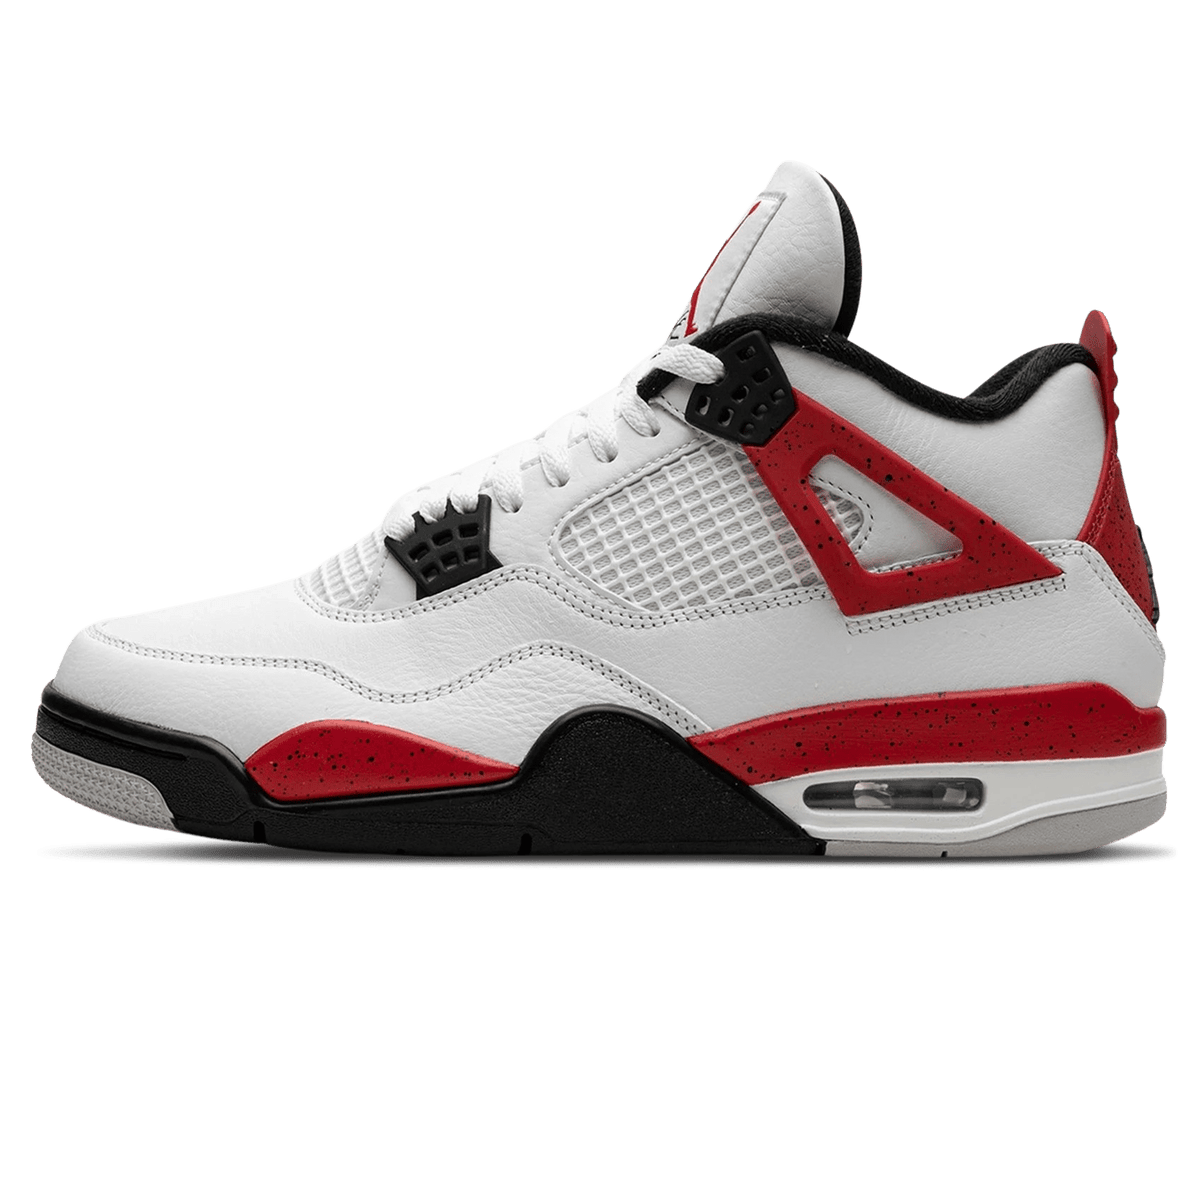 Air Jordan Michael 4 Retro 'Red Cement' - Kick Basketball